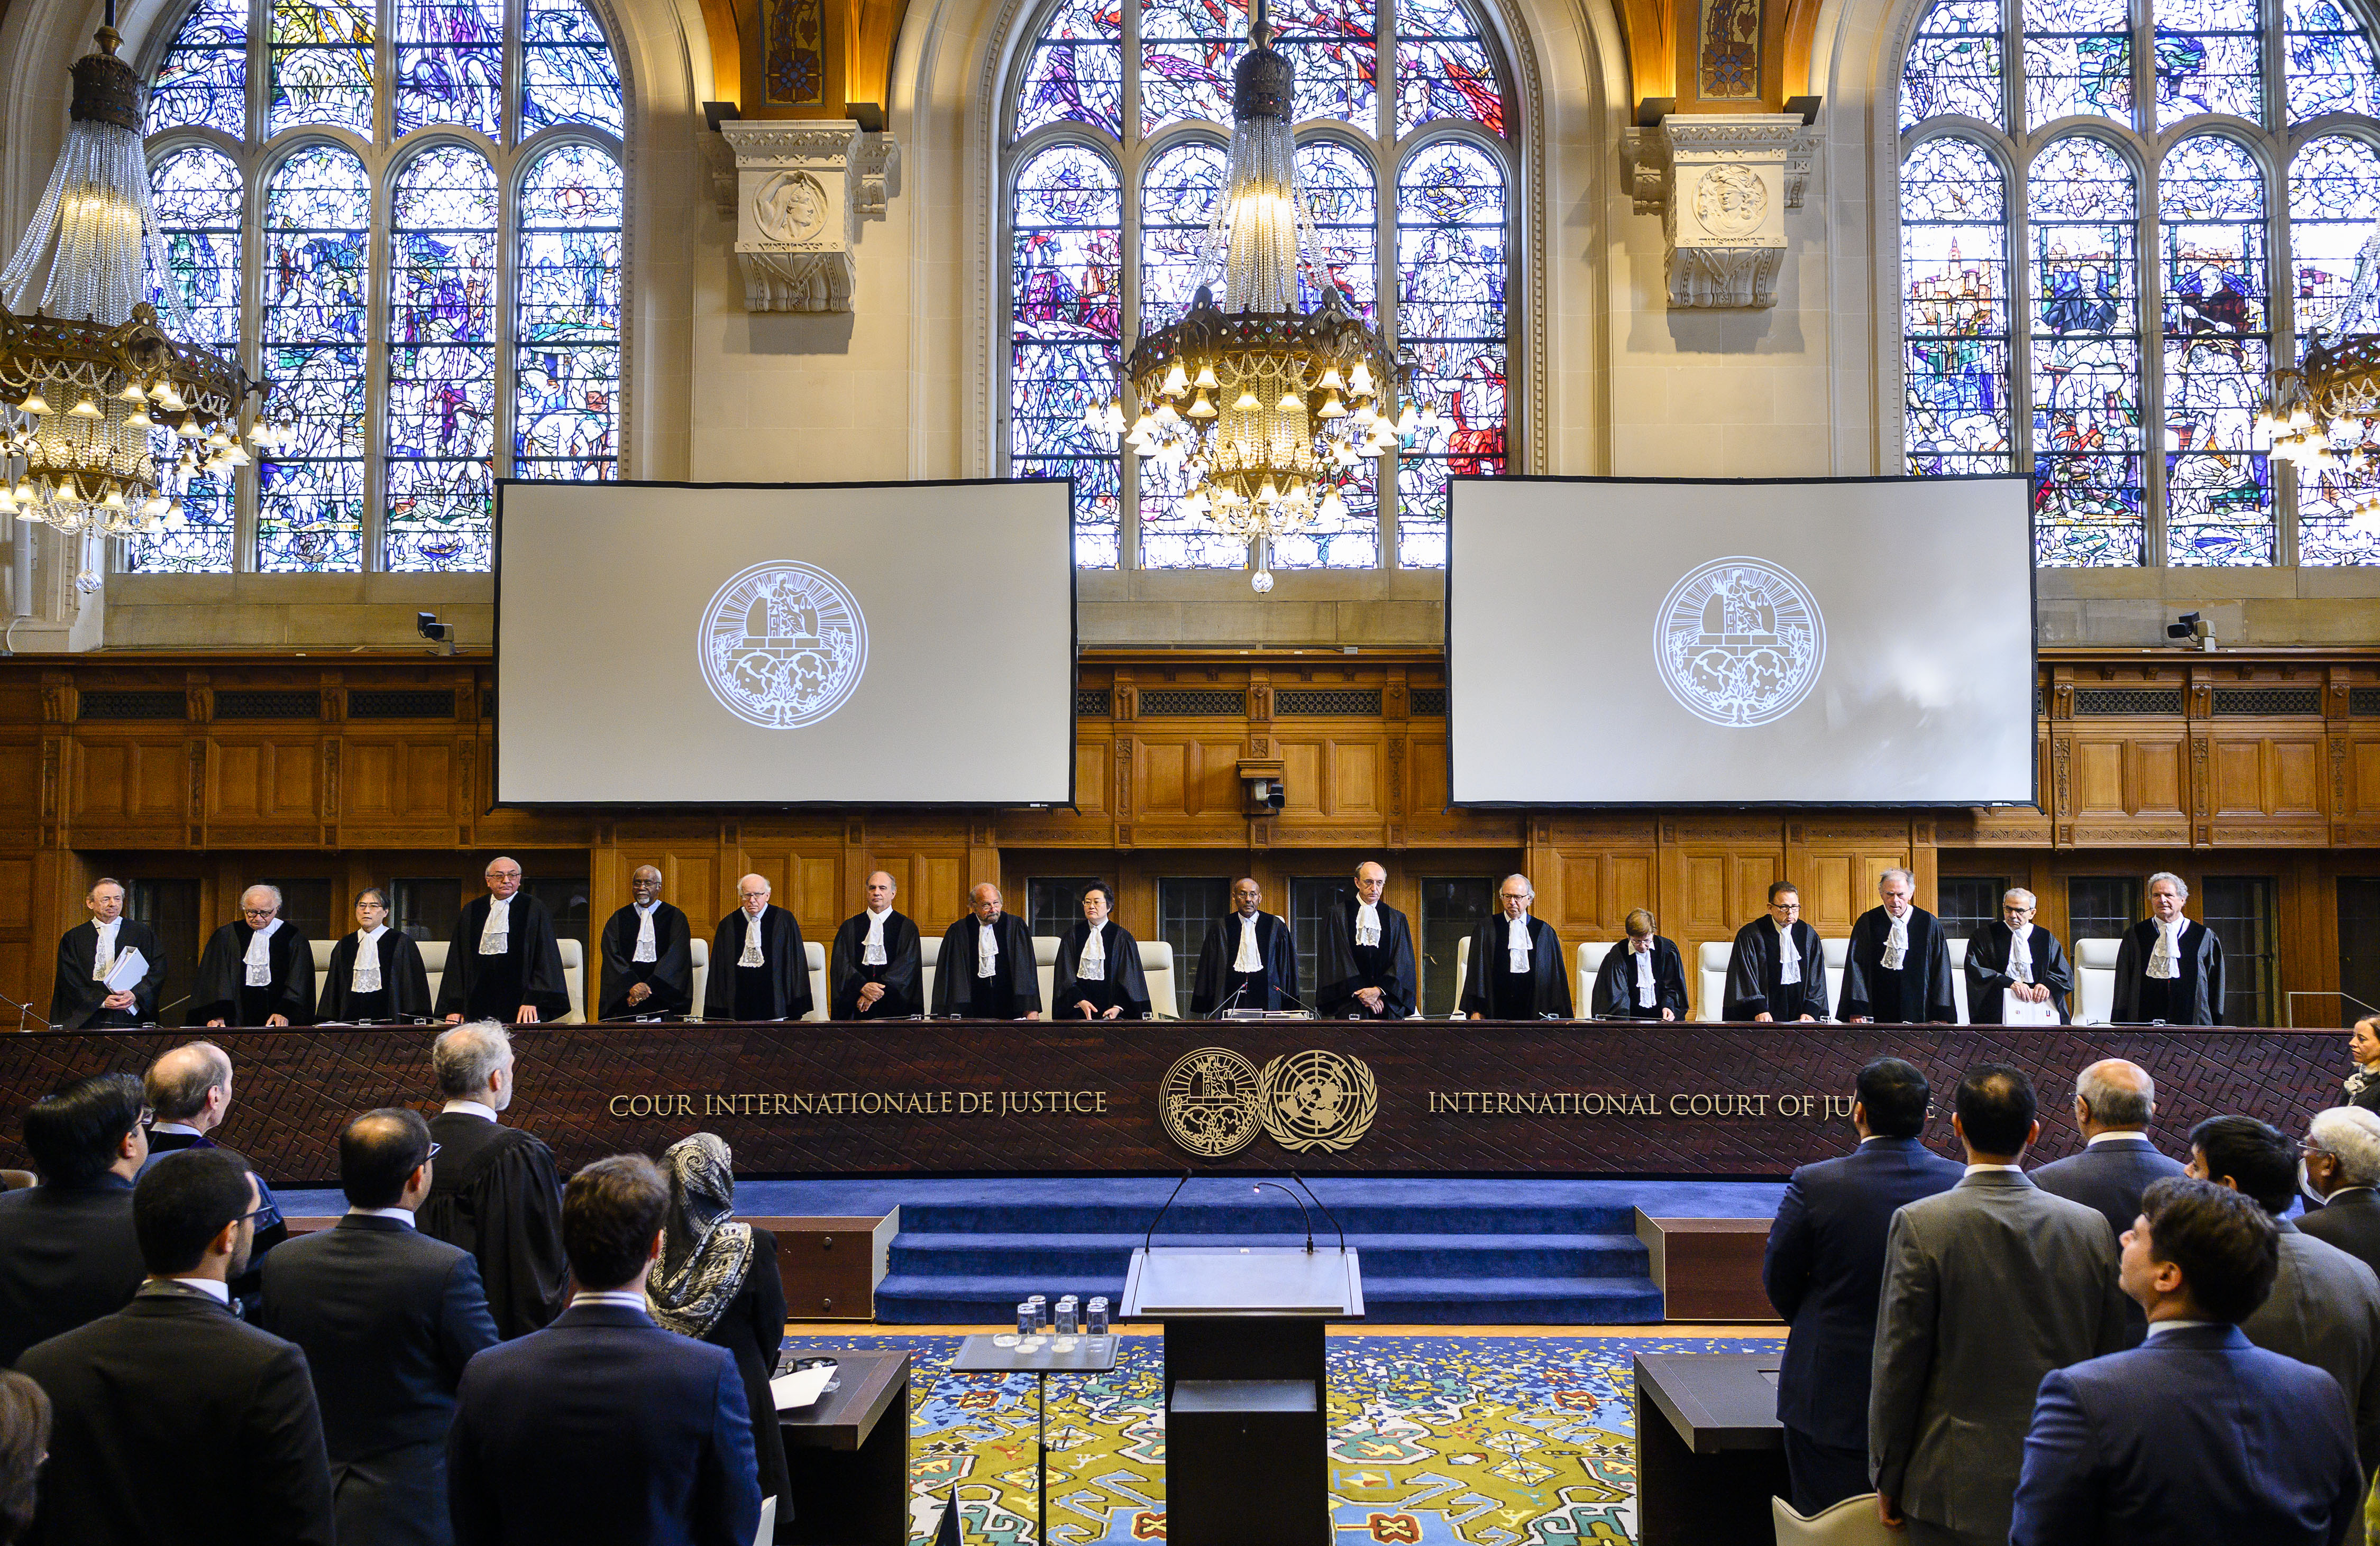 Суда гааги. Международный Уголовный трибунал (Гаага). Международный суд ООН. International Justice Court Международный суд. Суд ООН В Гааге.